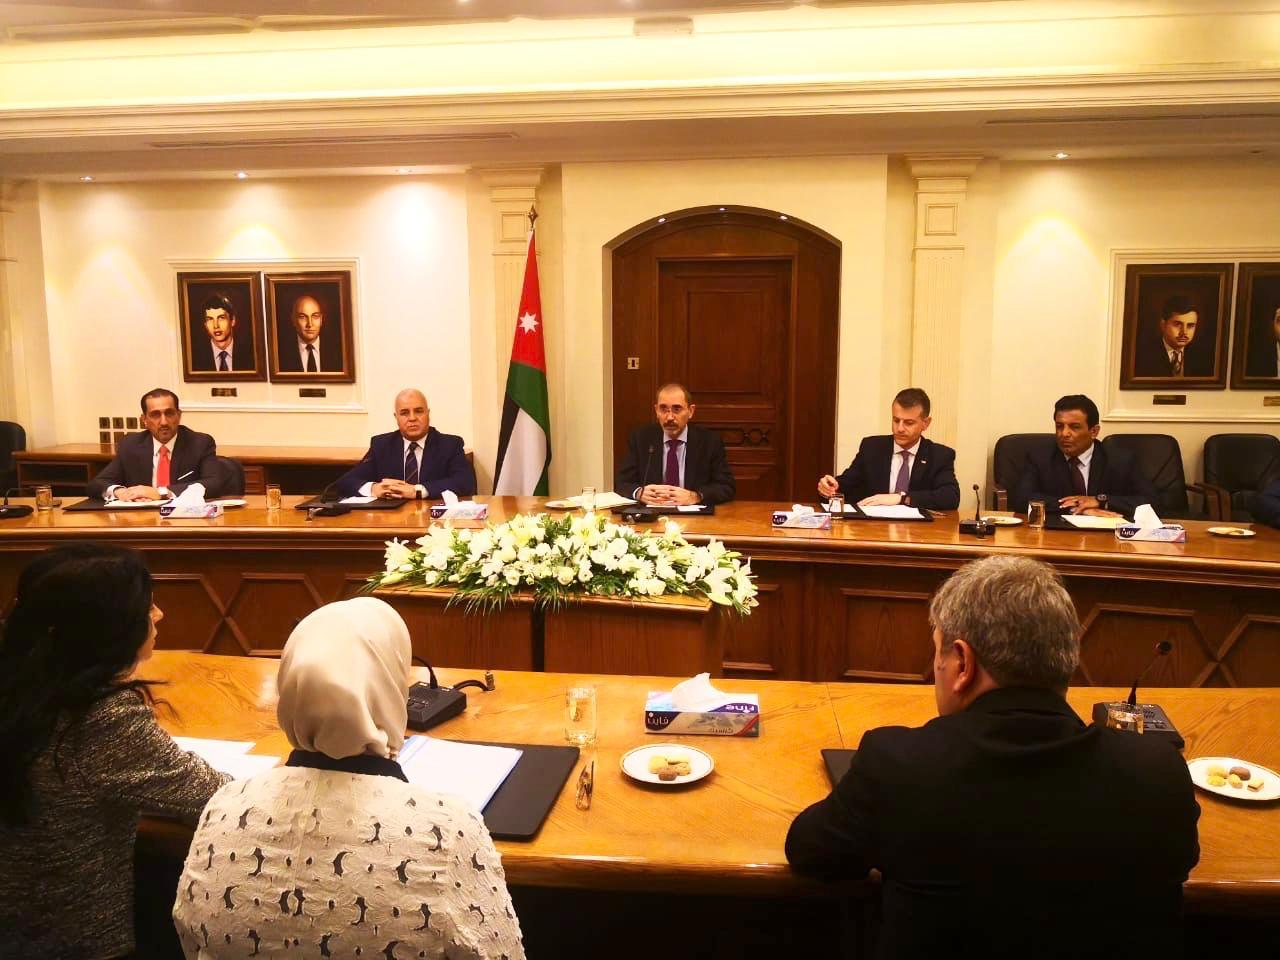 وزير الخارجية وشؤون المغتربين أيمن الصفدي، خلال استقباله رئيس وأعضاء لجنة الصداقة البرلمانية الأردنية التركية. (وزارة الخارجية)